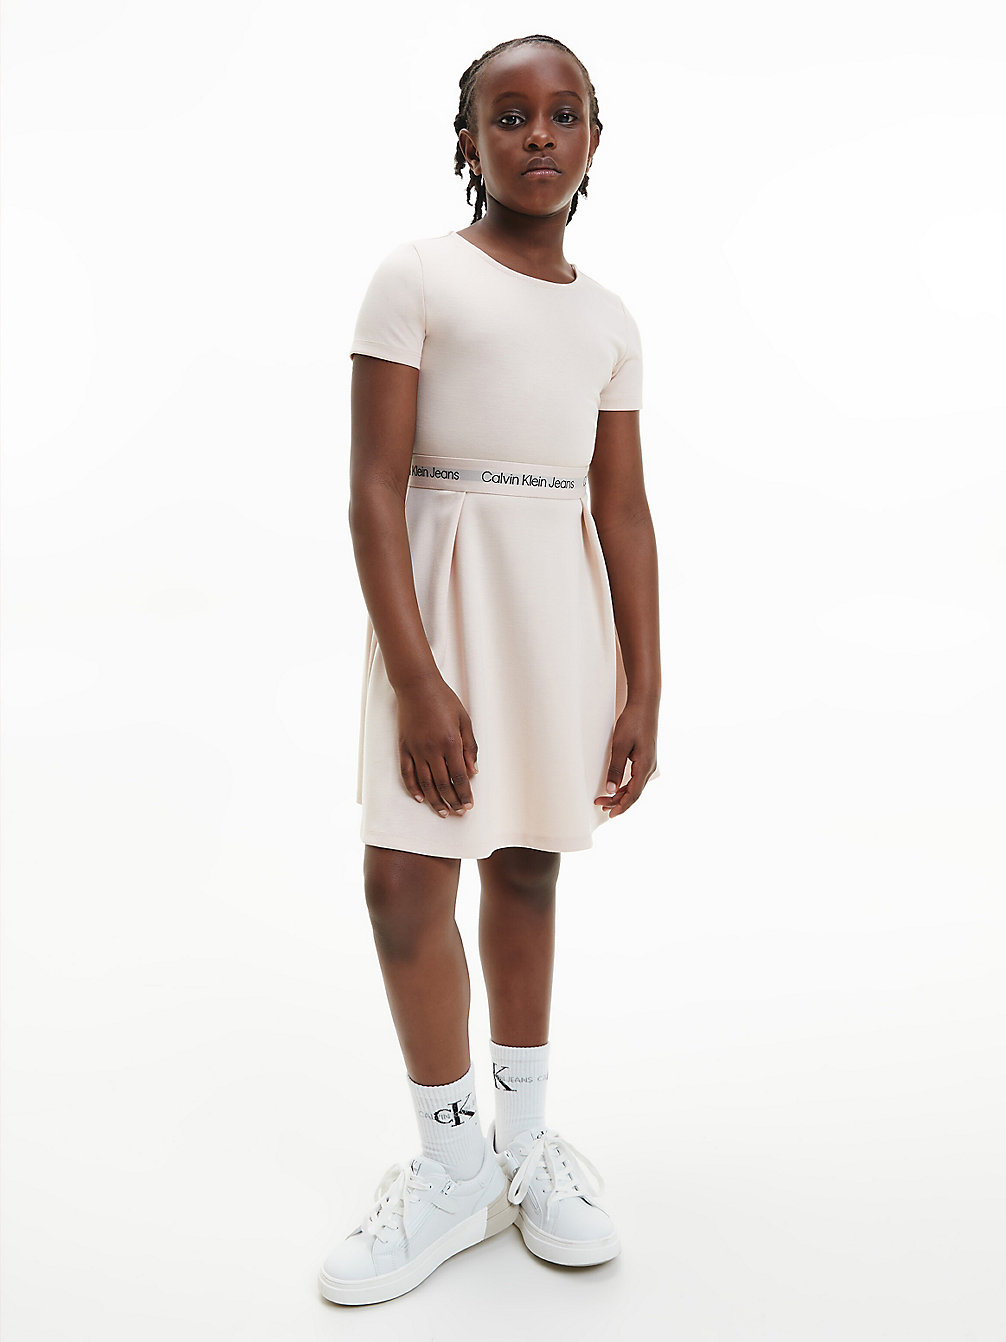 PALE ROSE > Расклешенное платье из трикотажа Milano > undefined девочки - Calvin Klein